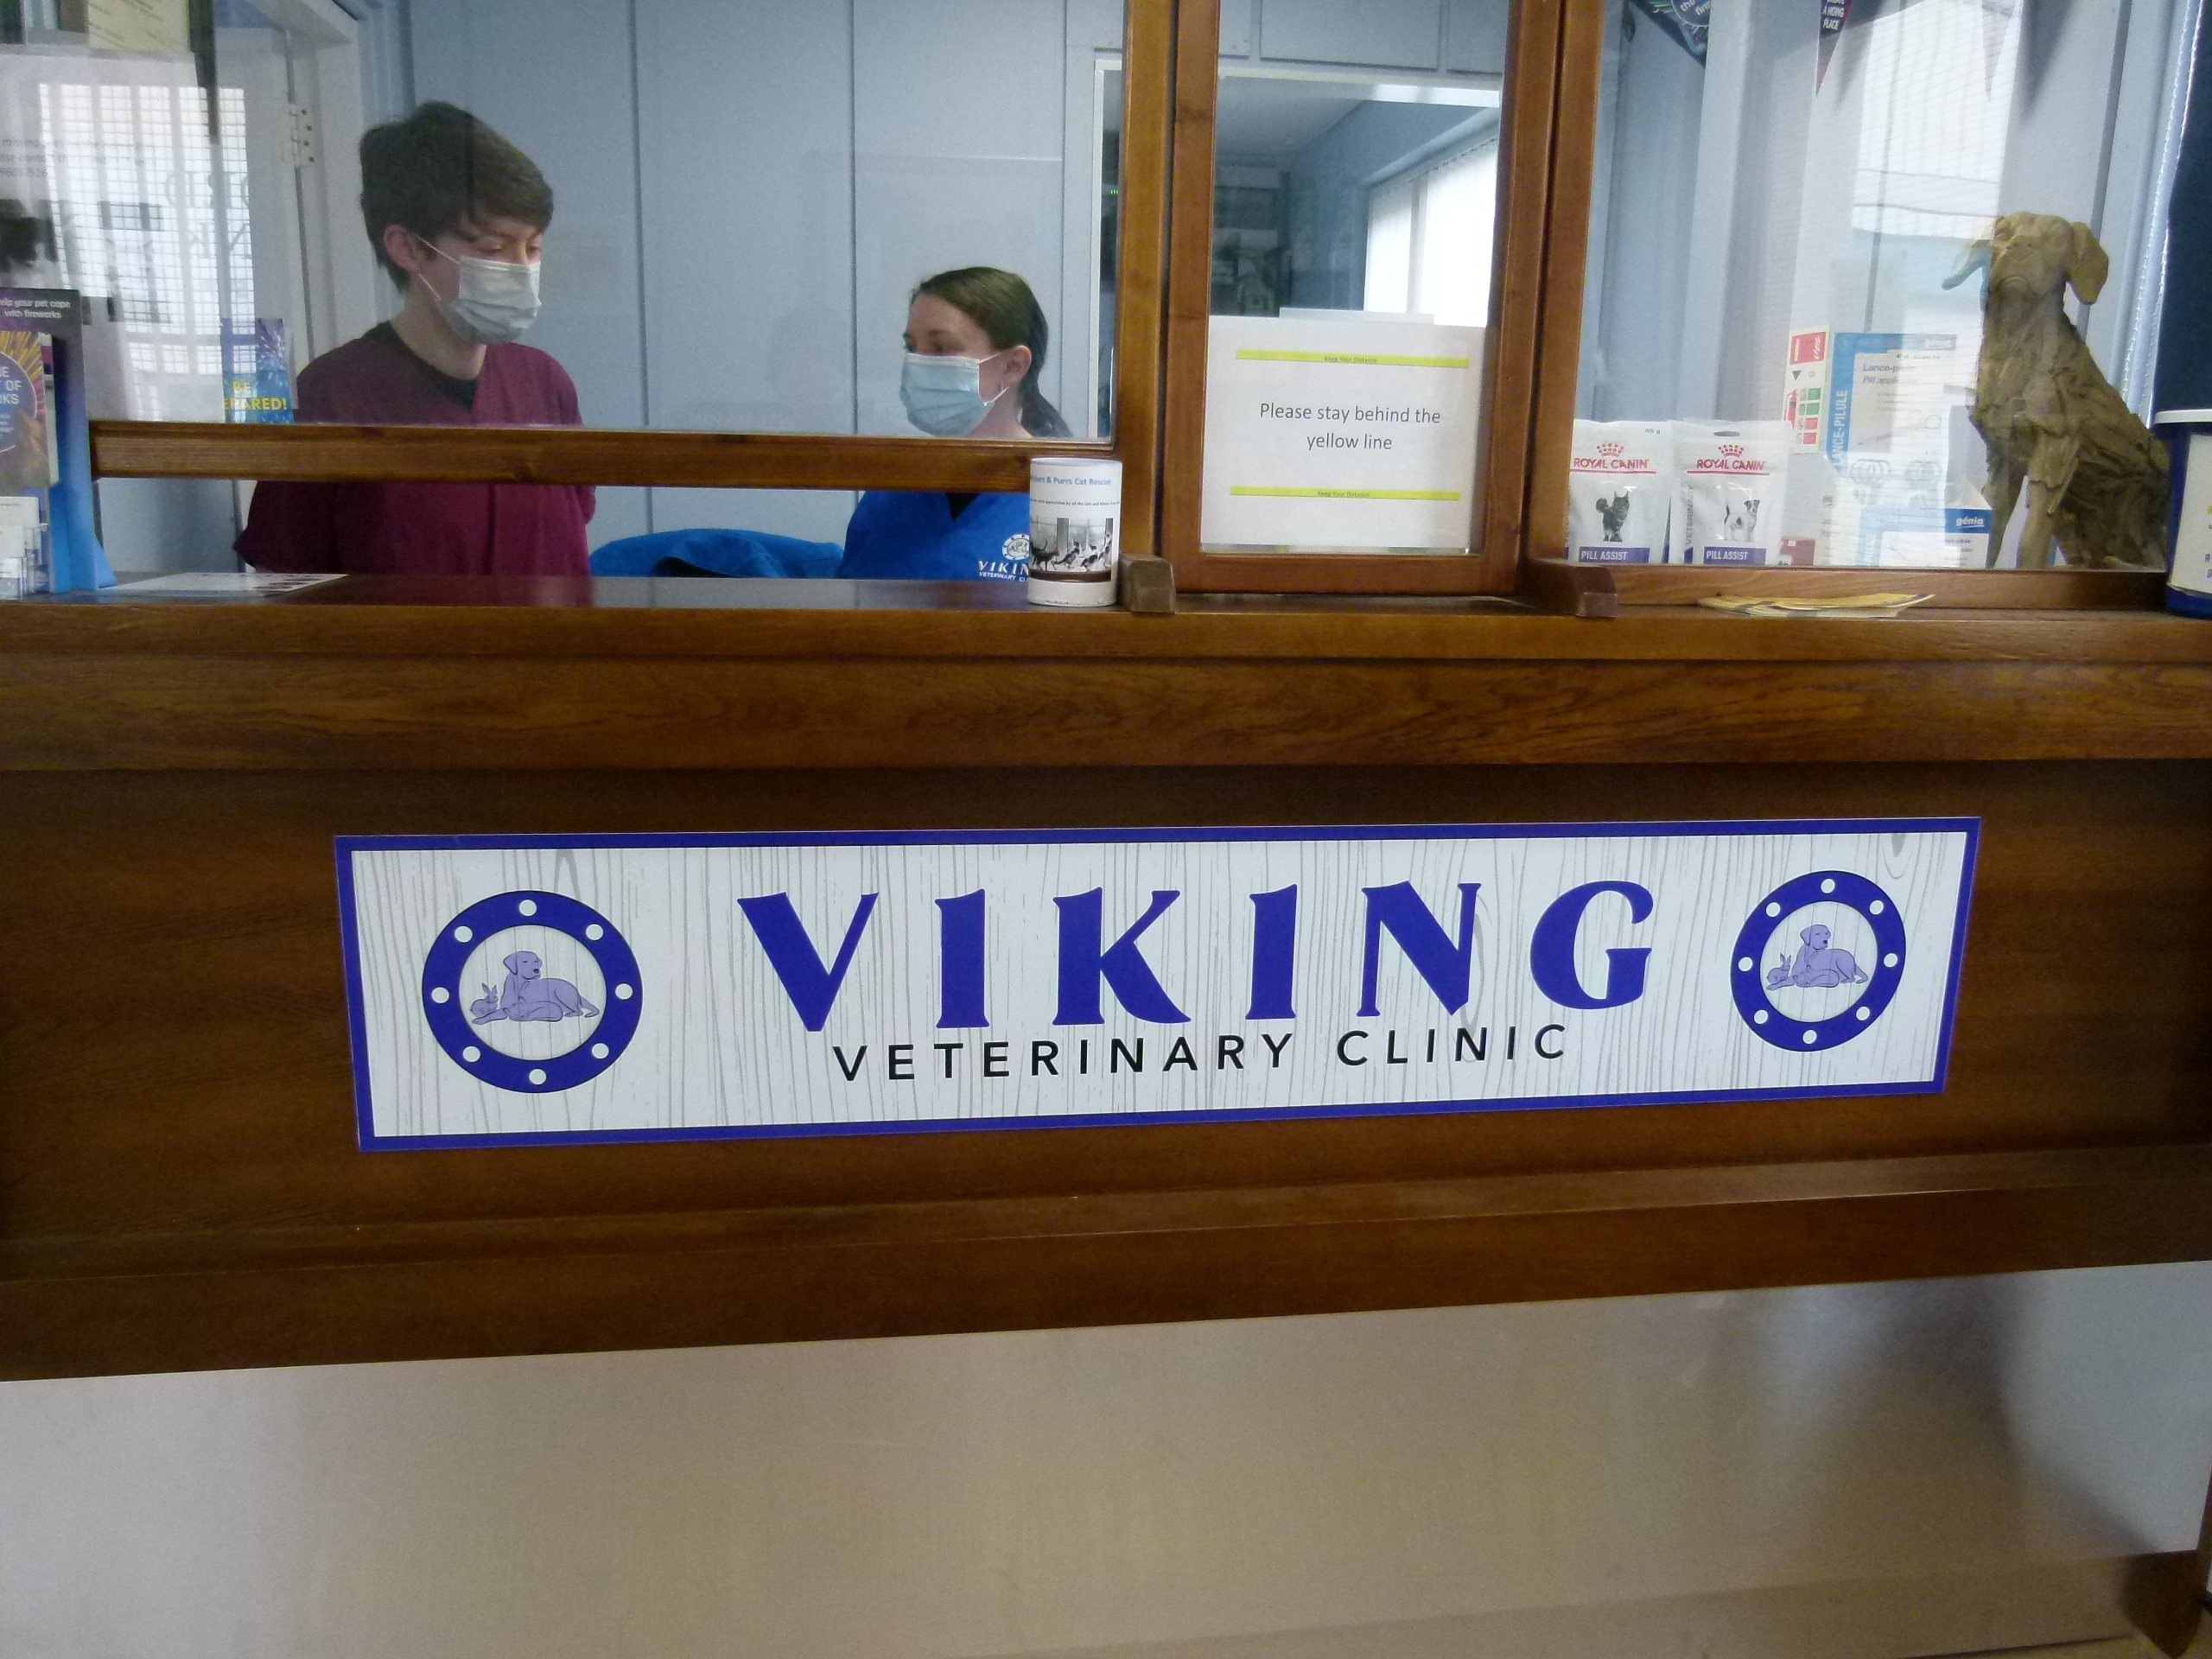 Viking Veterinary Clinic staff